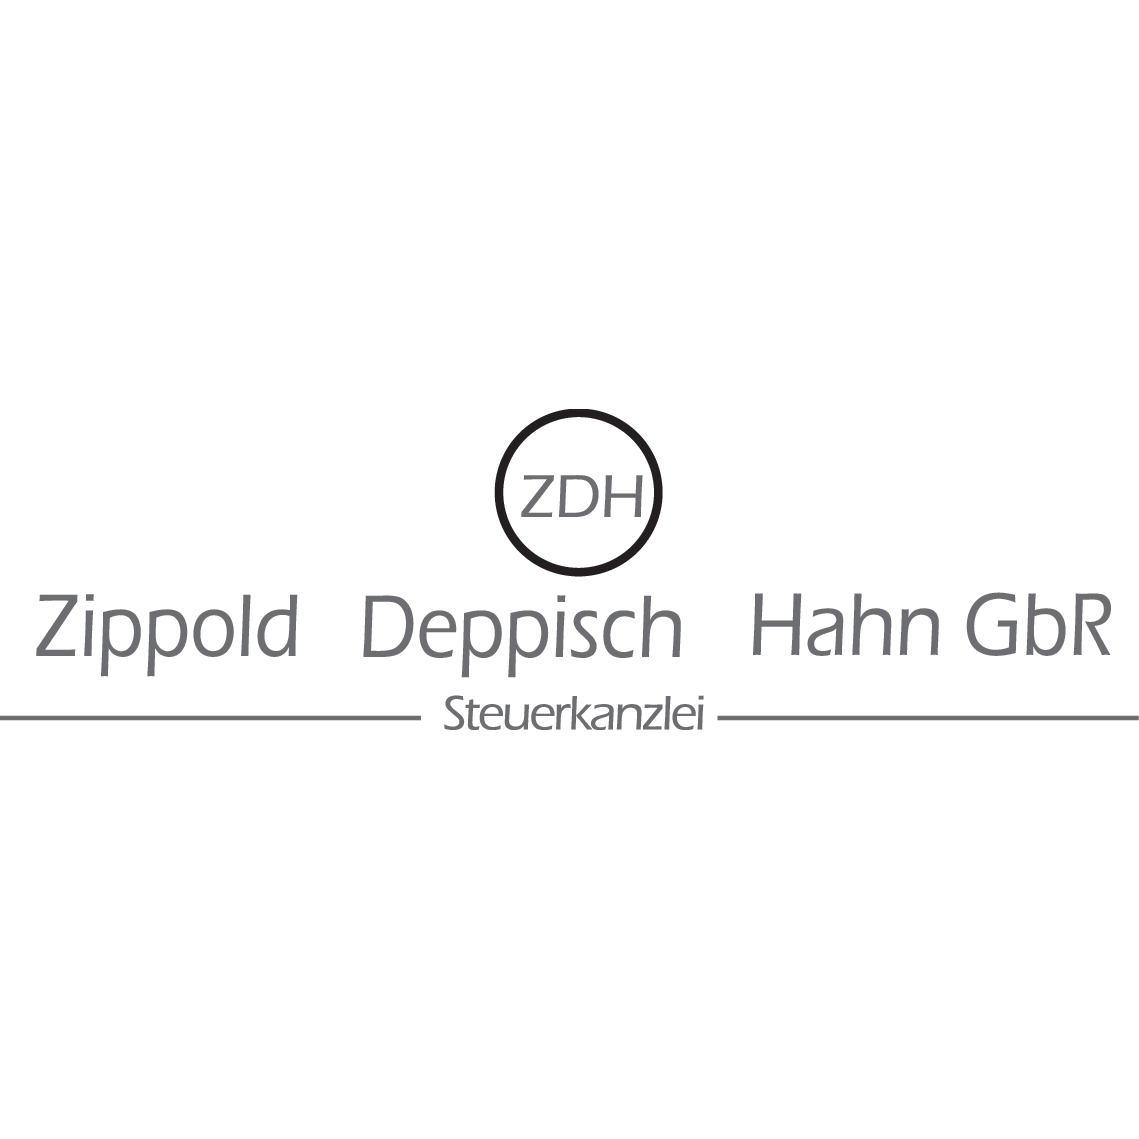 Zippold Deppisch Hahn GbR - Steuerkanzlei Logo